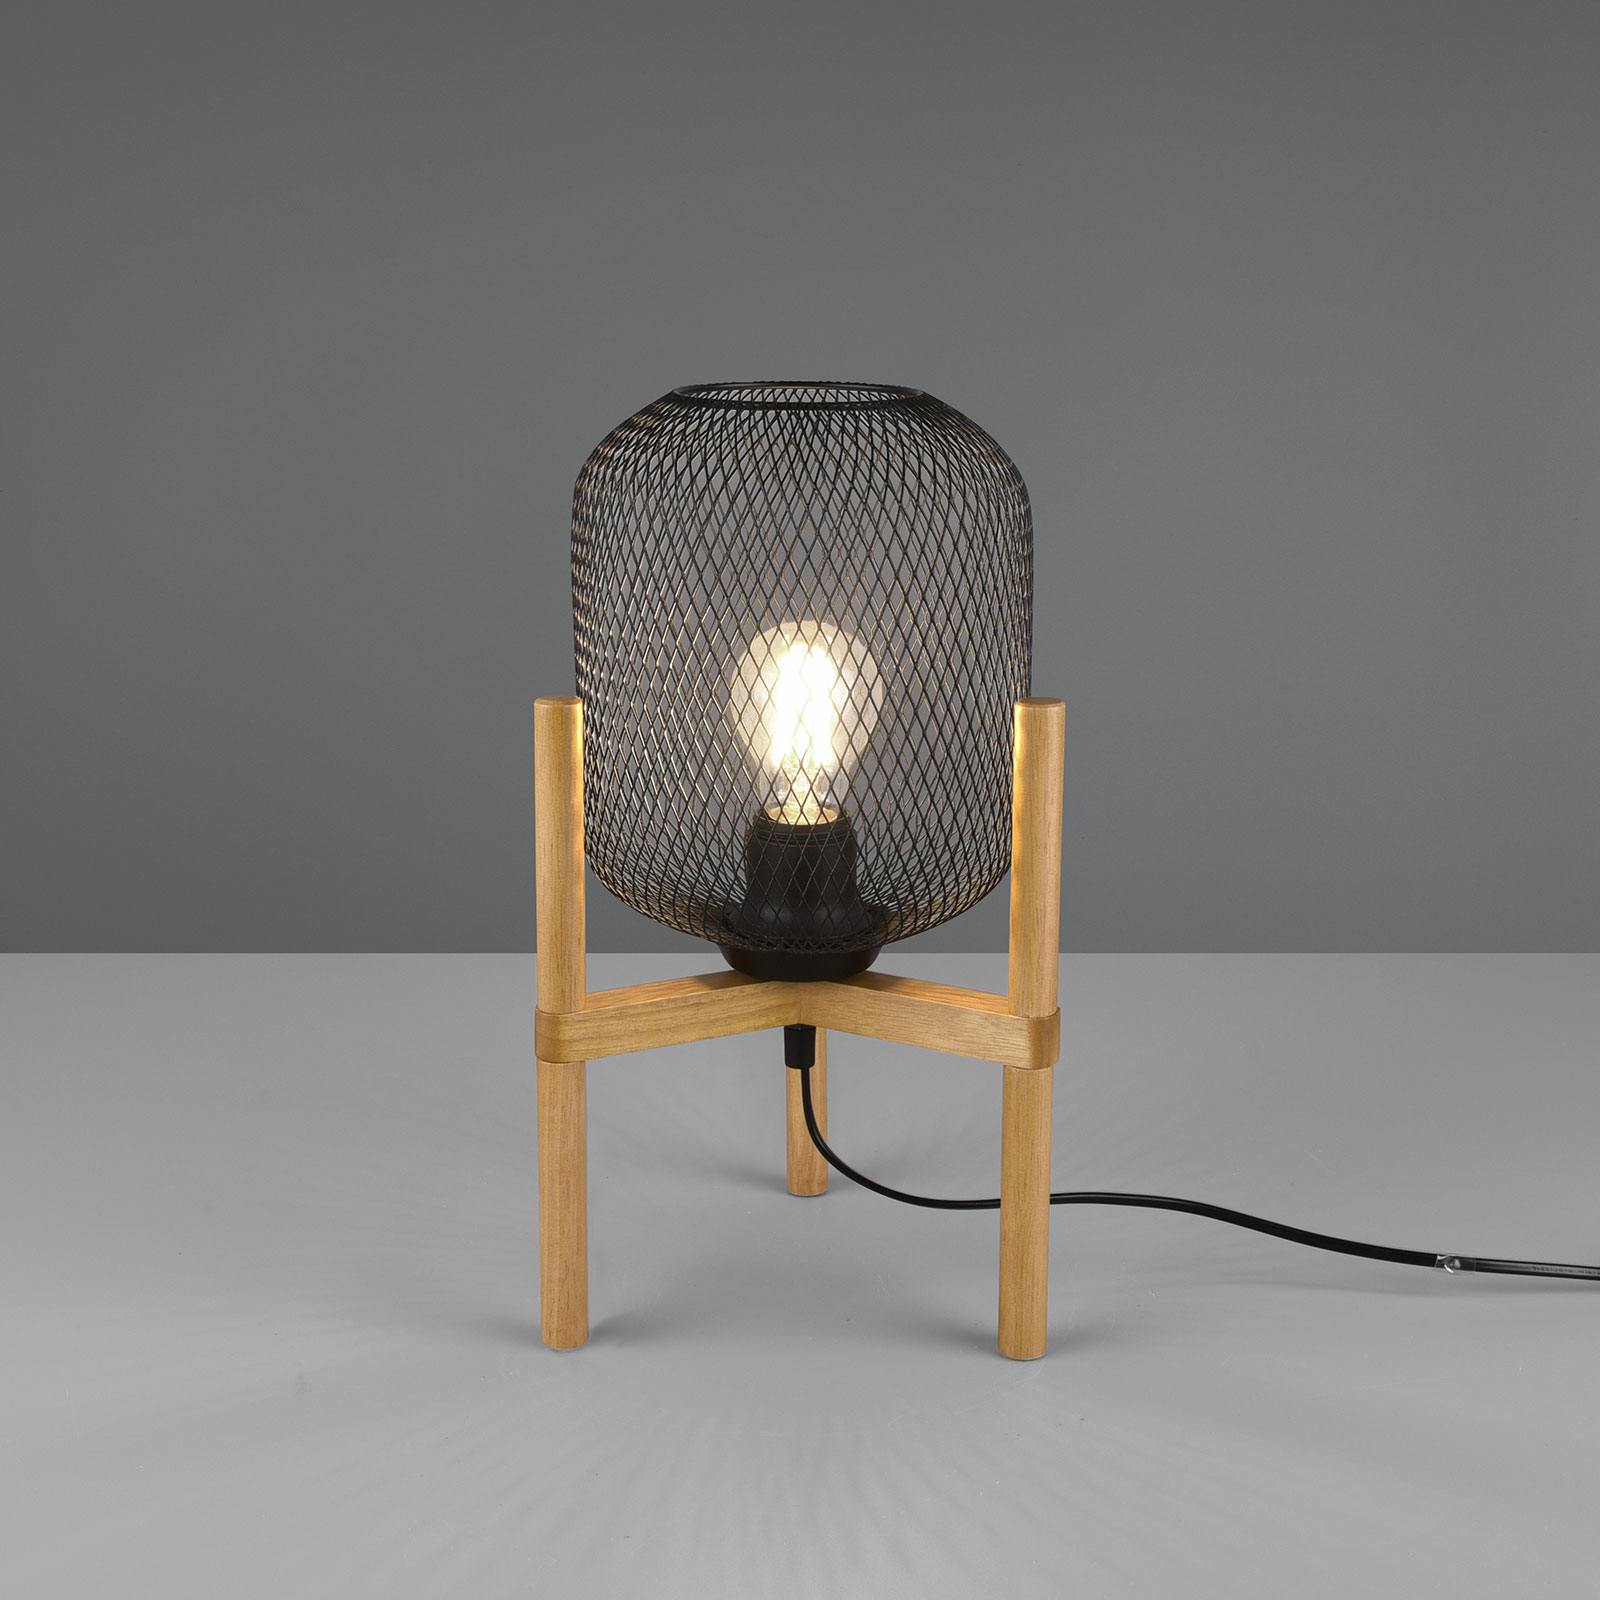 Tafellamp Calimero met driebeen-houten frame